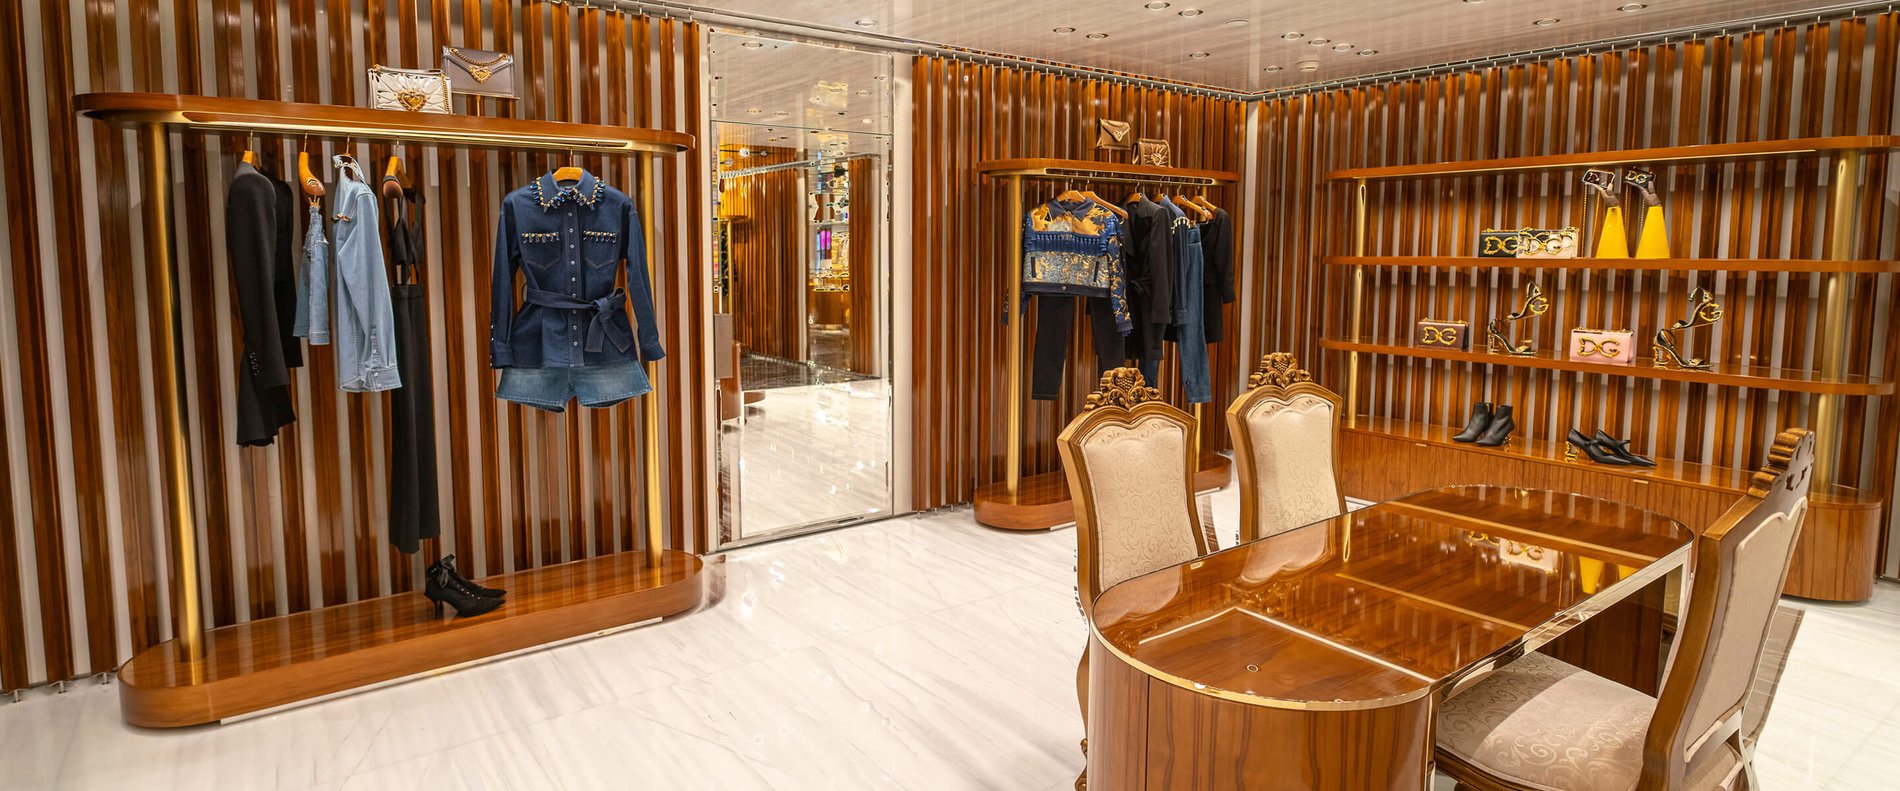 Dolce & Gabbana Canton Road Boutique, Hong Kong – jukanovic